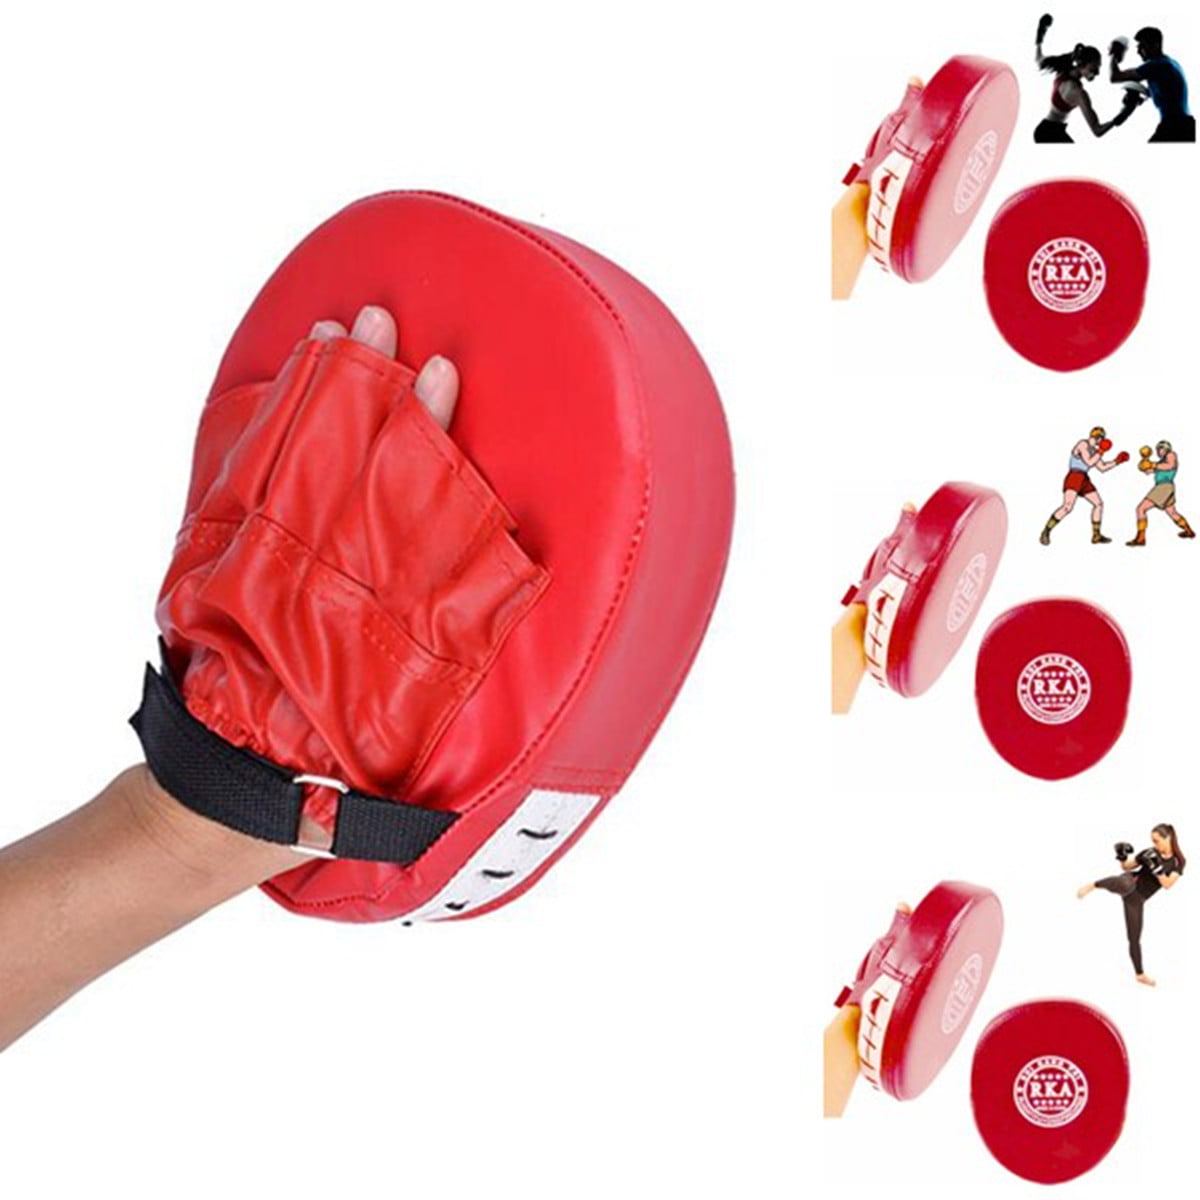 MMA Focus Thai Kick Boxing Training Glove Kungfu Punch Pad Mitt Hand Target  ！ 